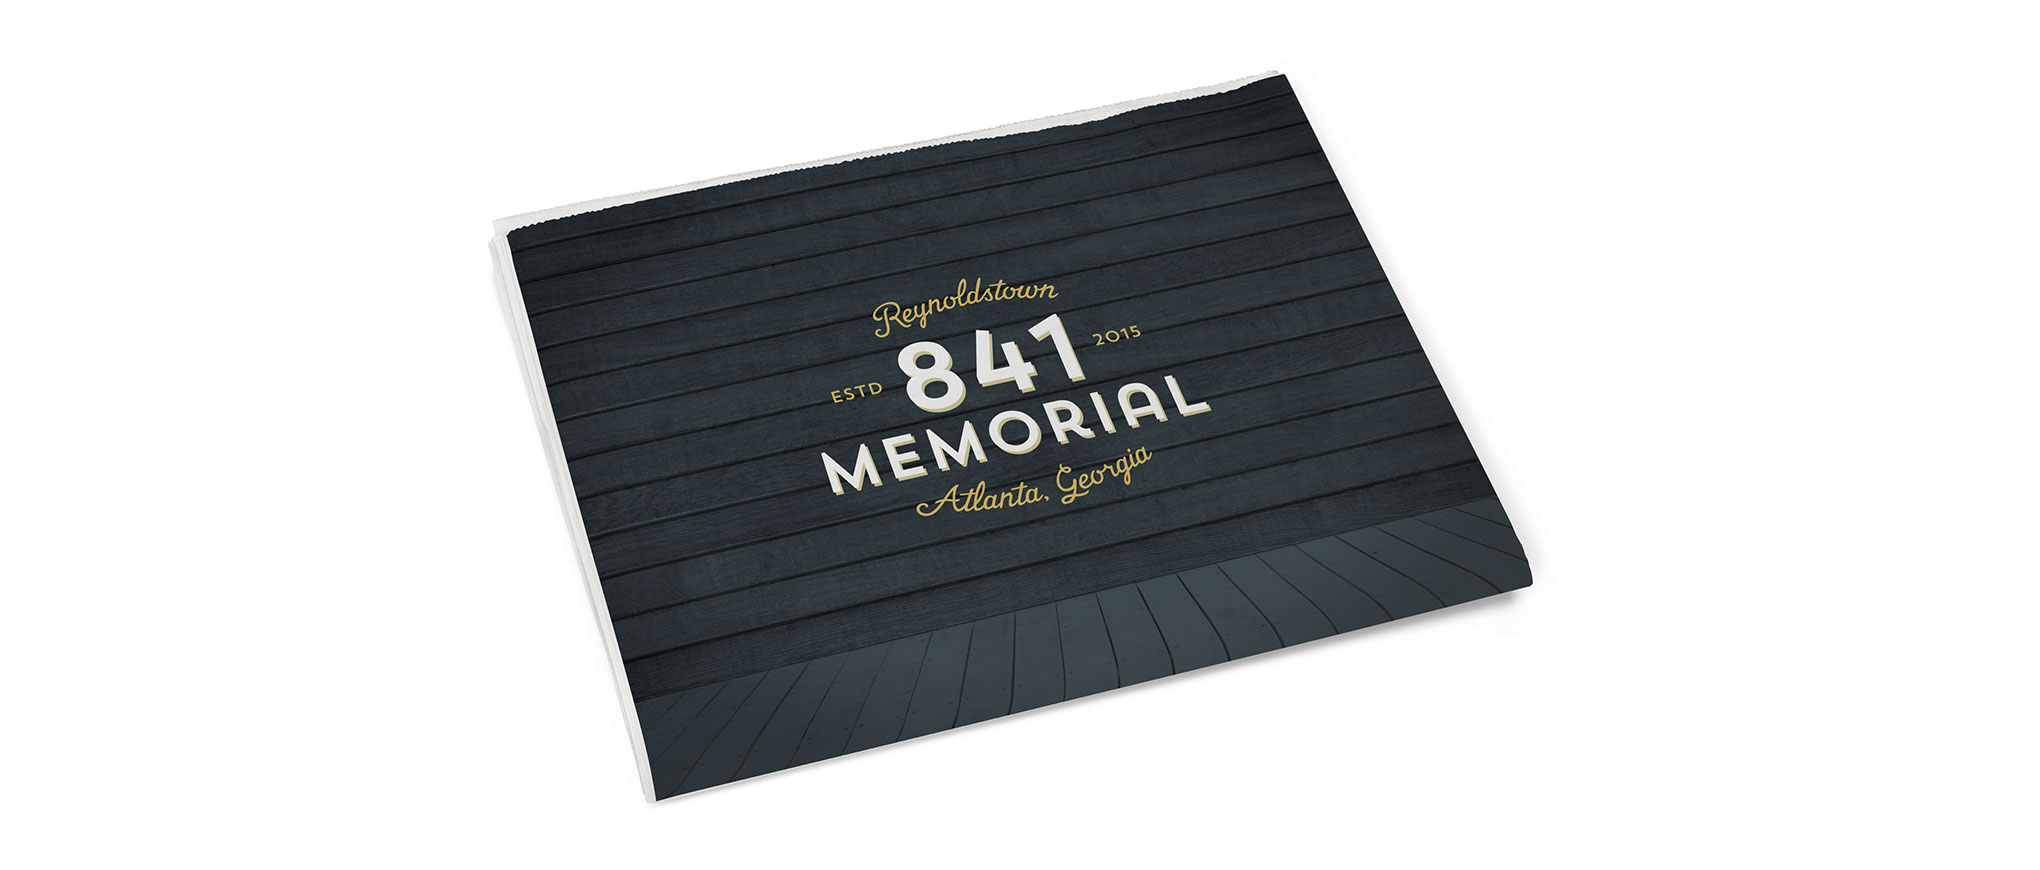 841 Memorial